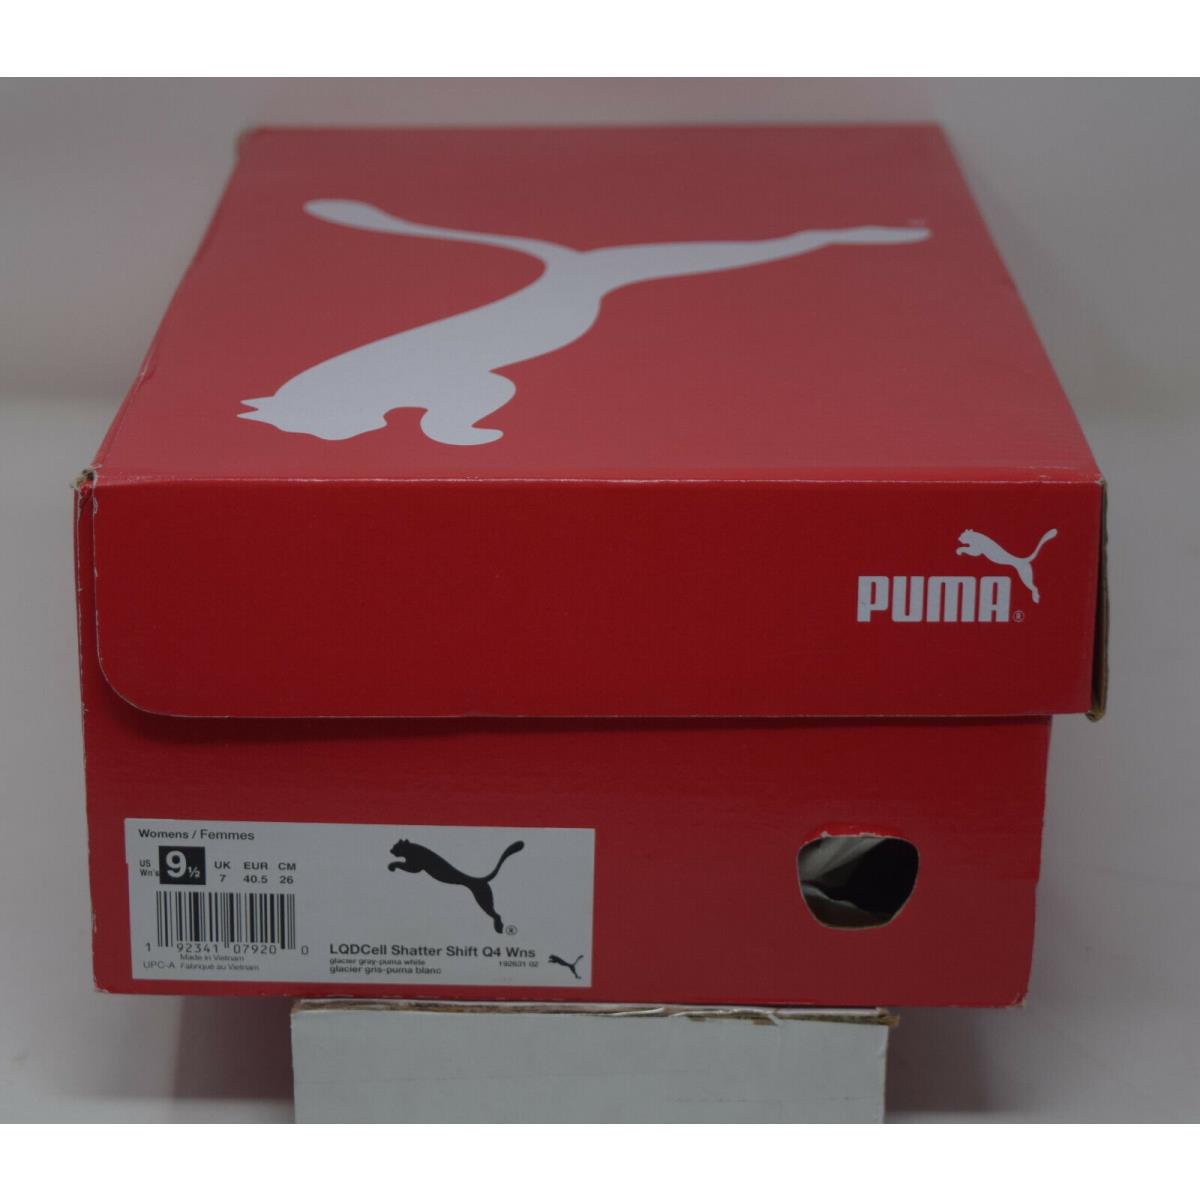 Puma shoes LQDcell - Multicolor 4